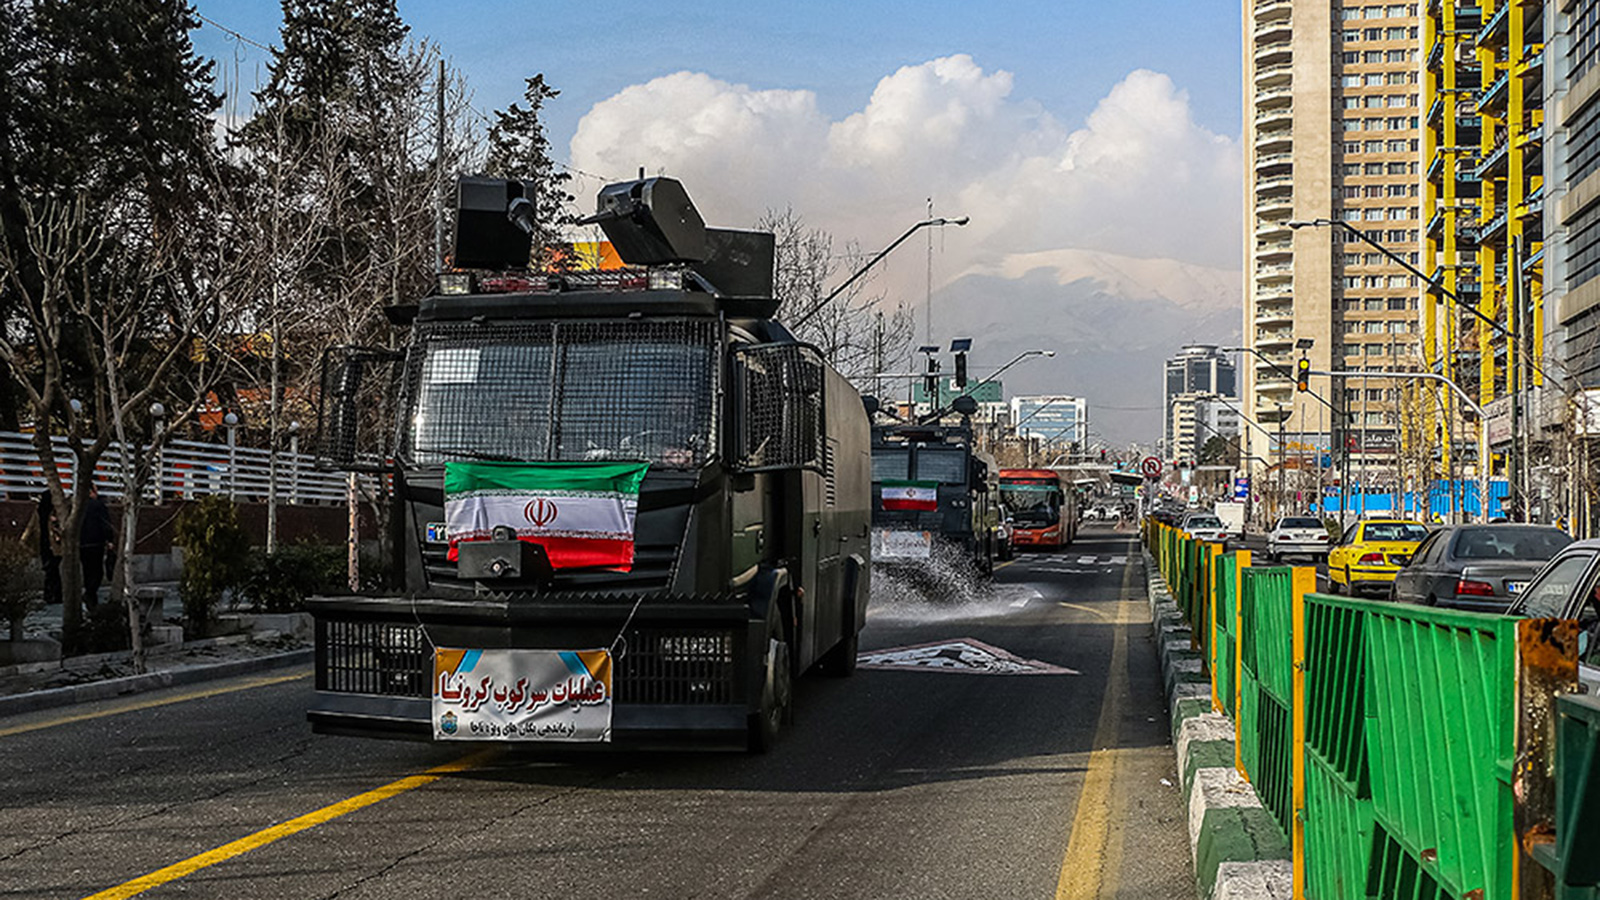 ‪إيران تسخر آليات مكافحة الشغب لتعقيم الشوارع‬ (الصحافة الإيرانية)